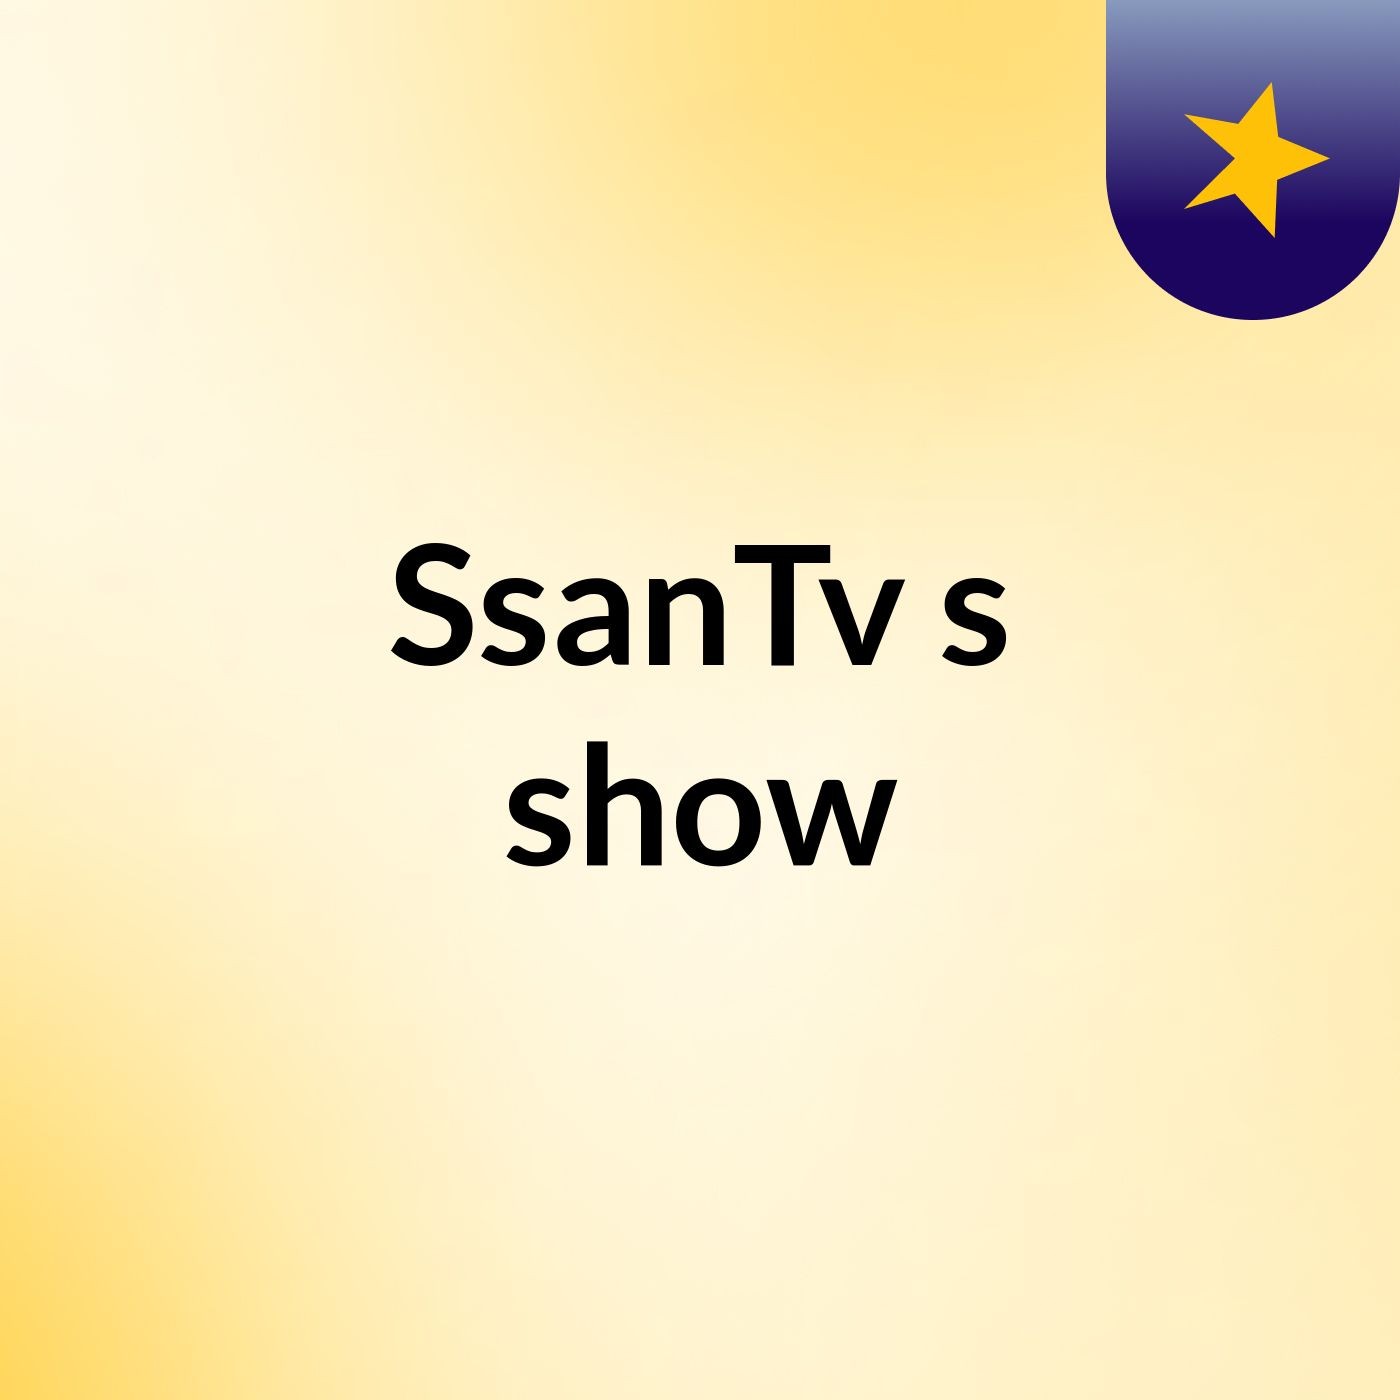 SsanTv's show